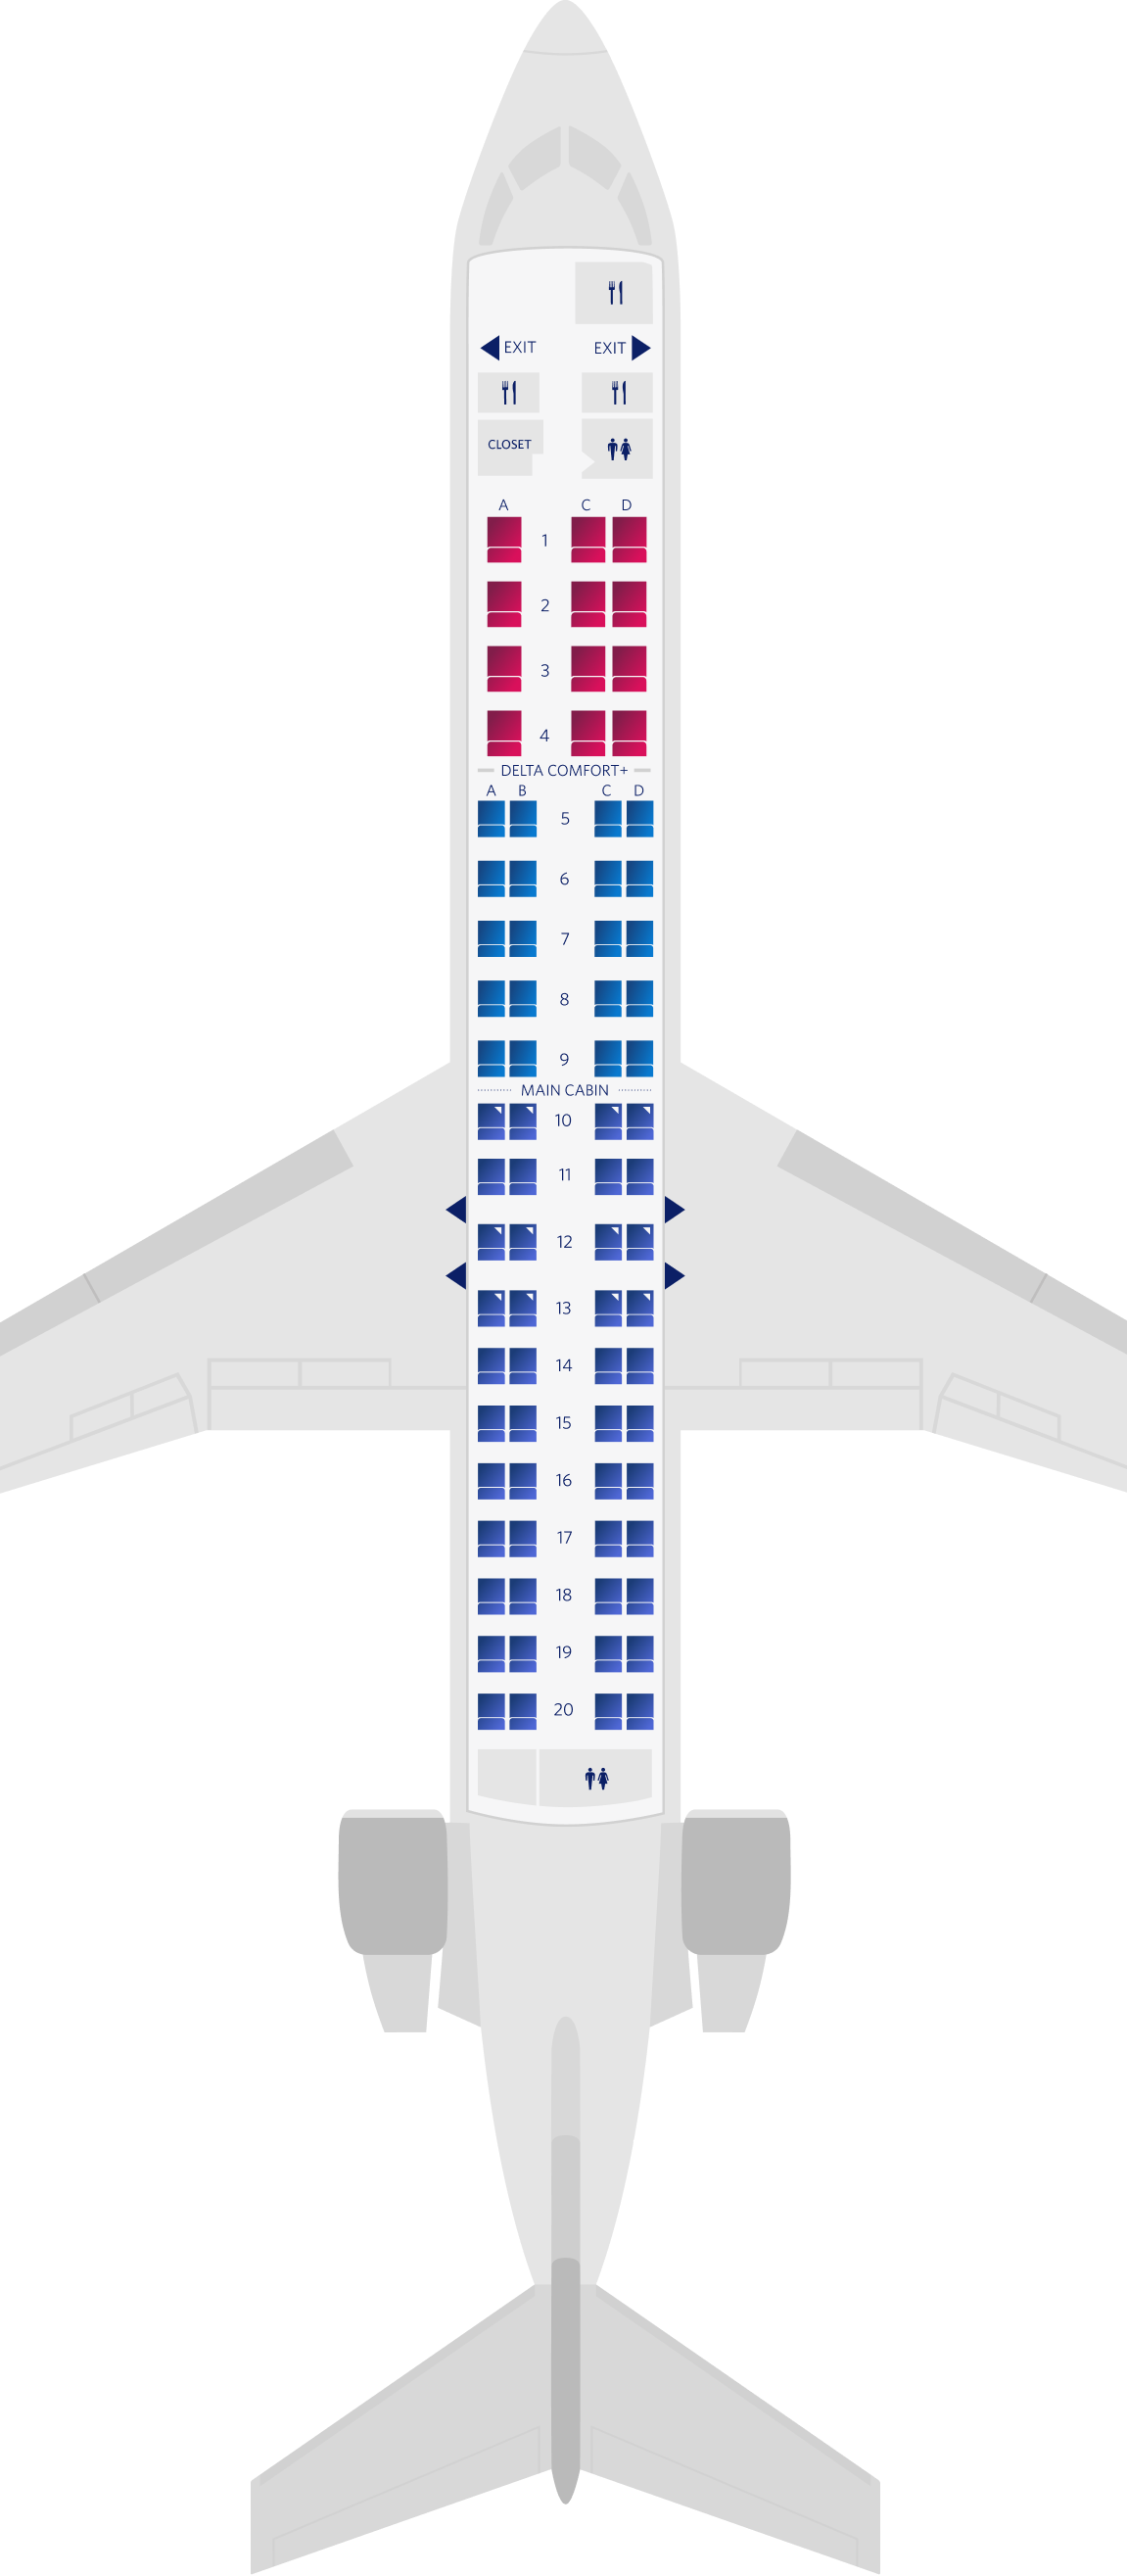 Configuration des sièges du Bombardier CRJ-900-76 